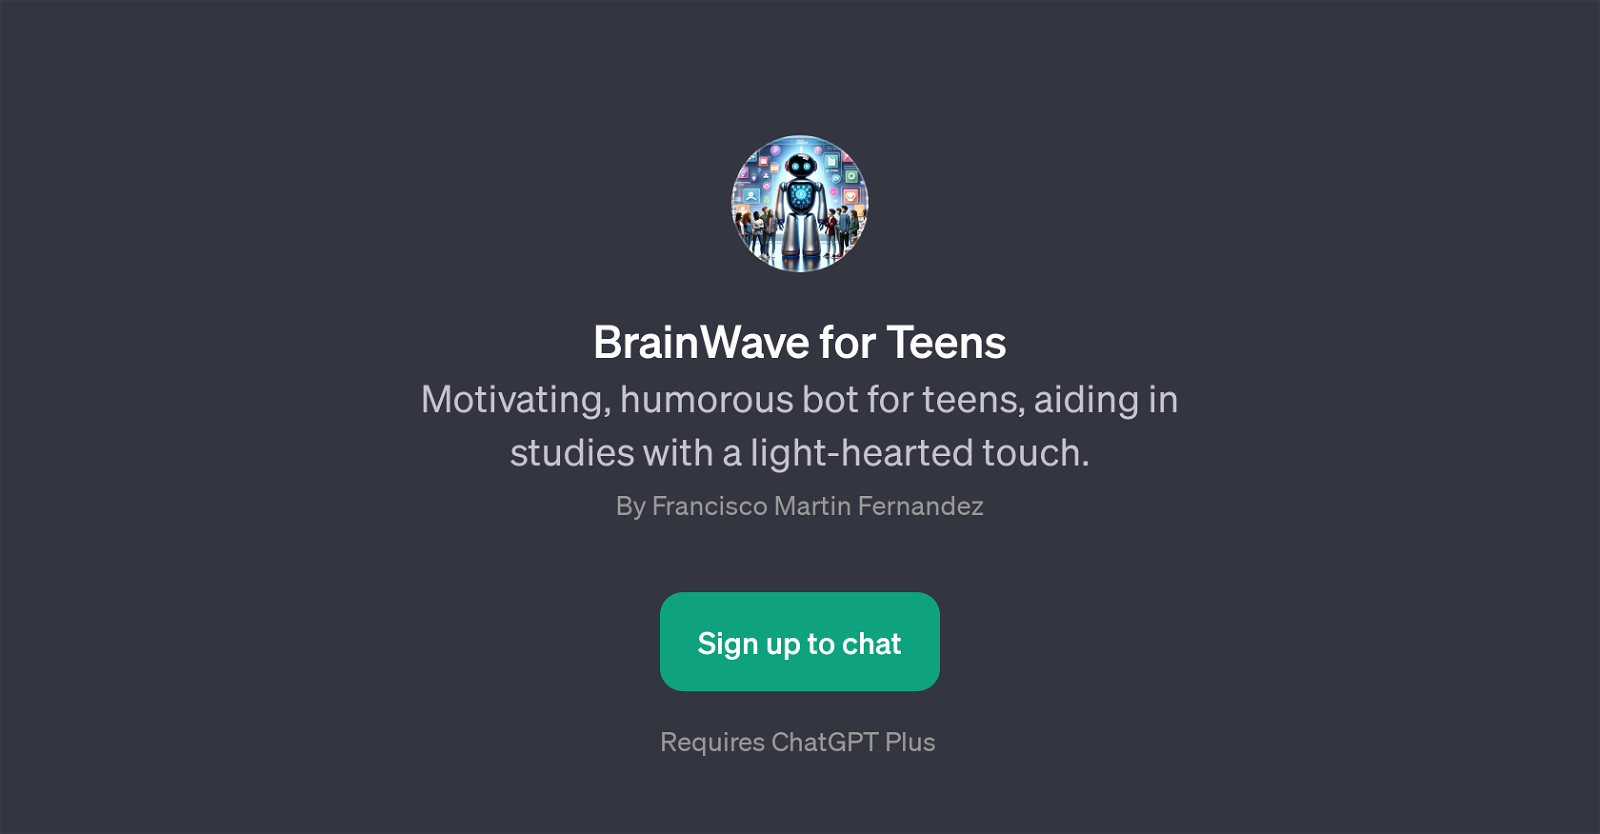 BrainWave for Teens website